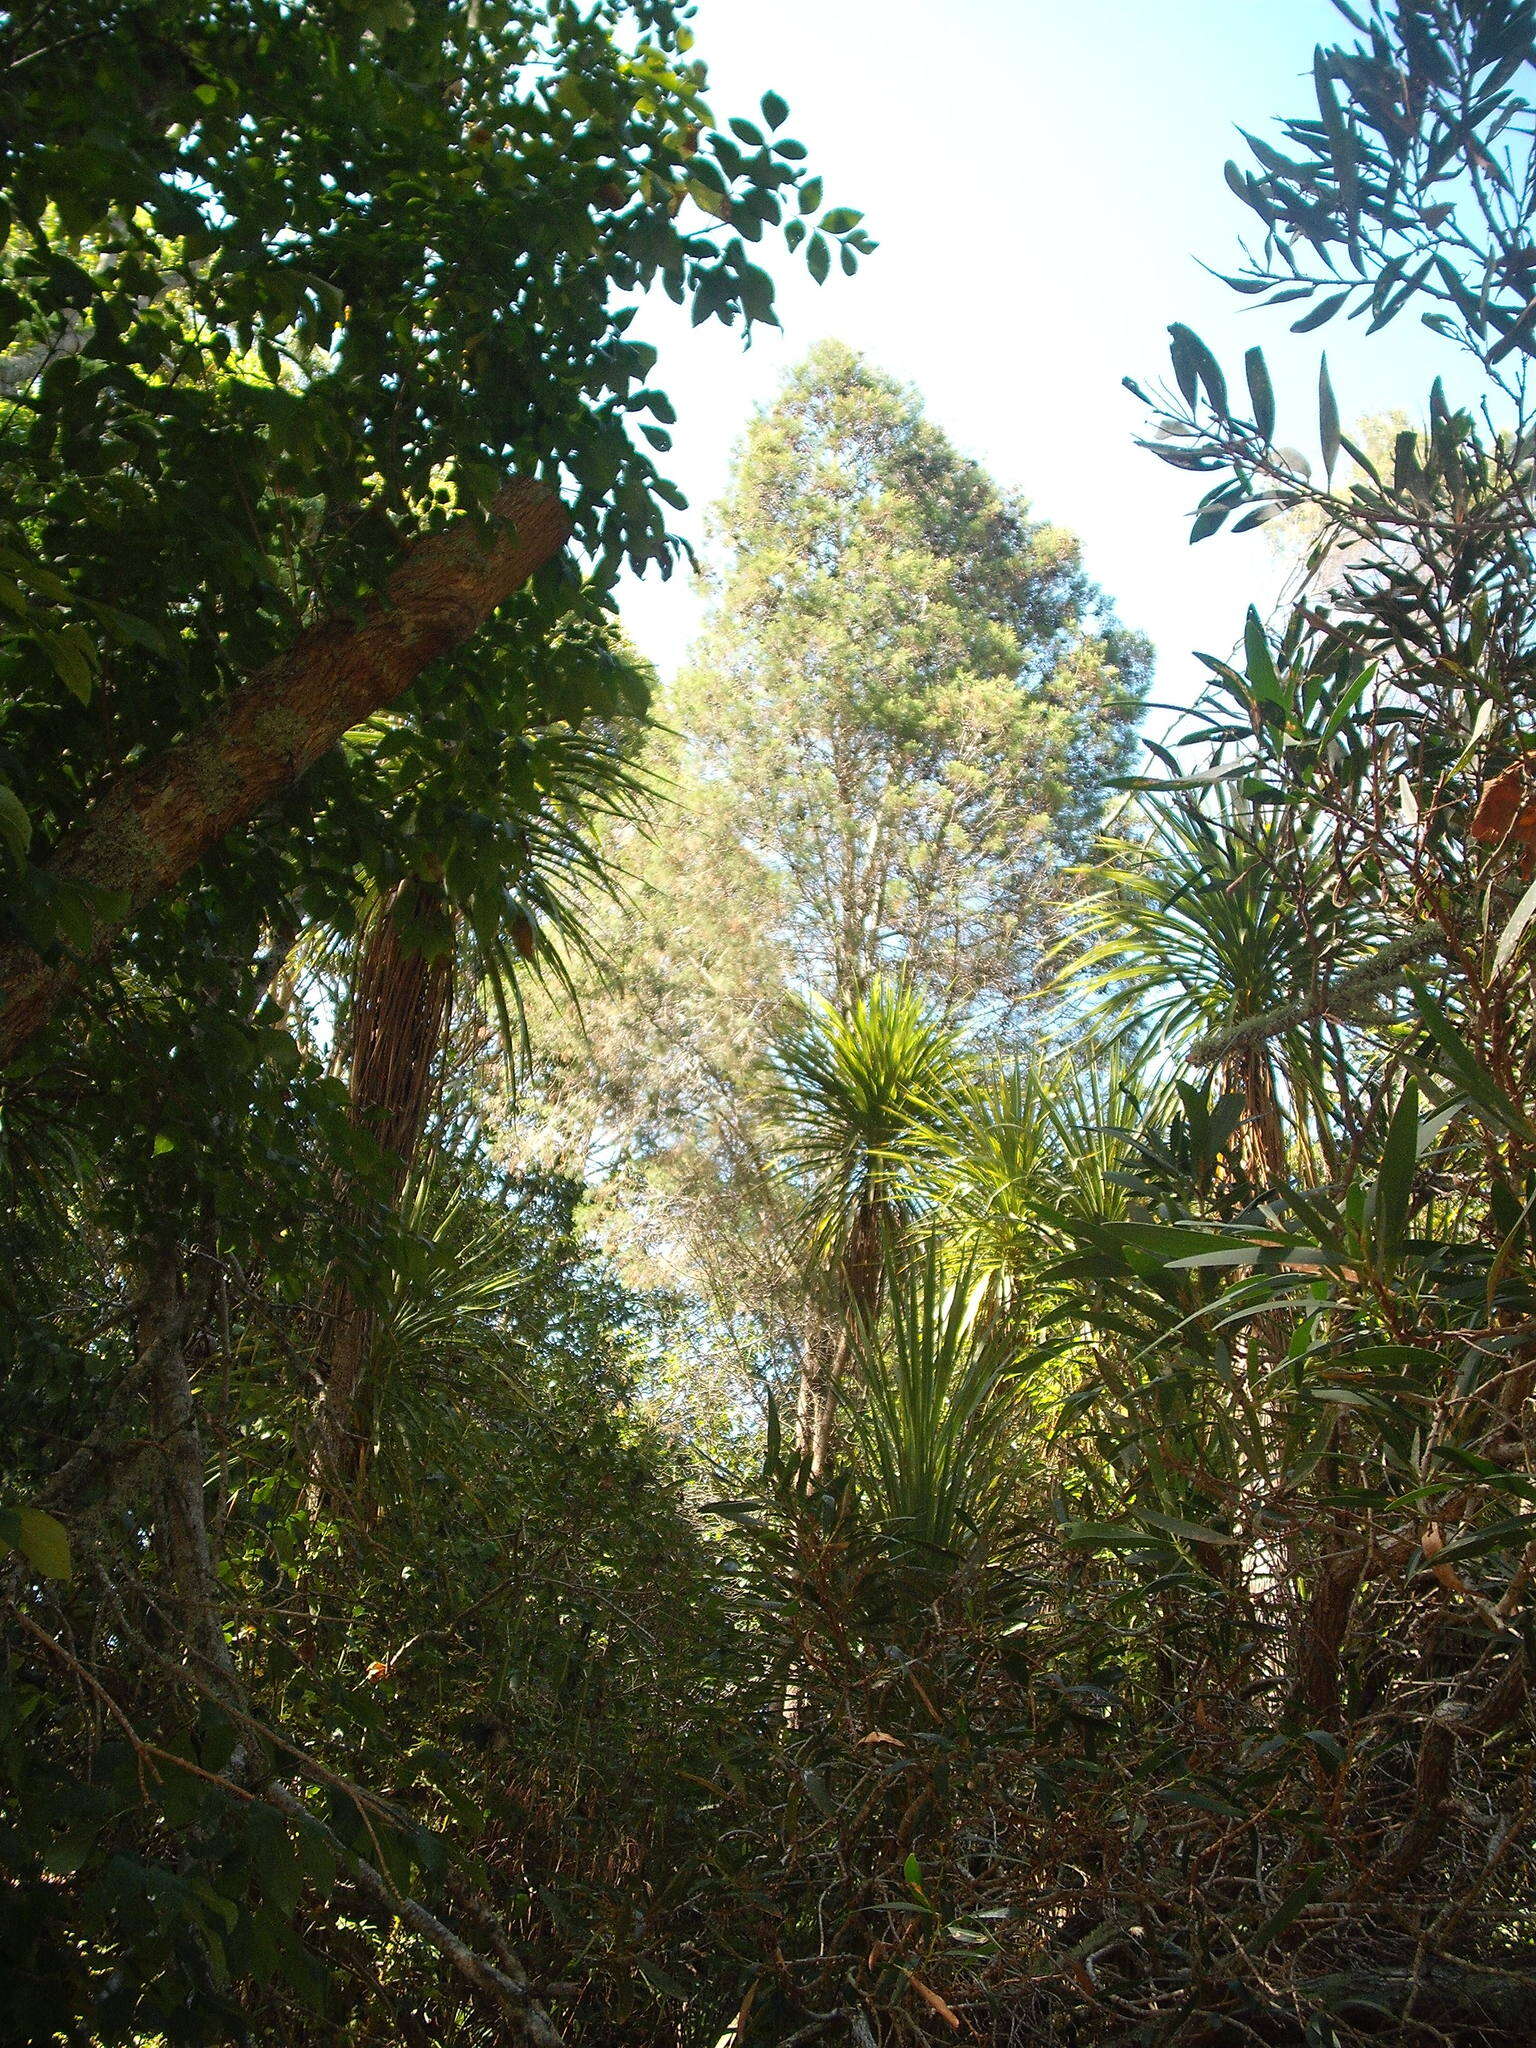 Image of Illawara Mountain Pine